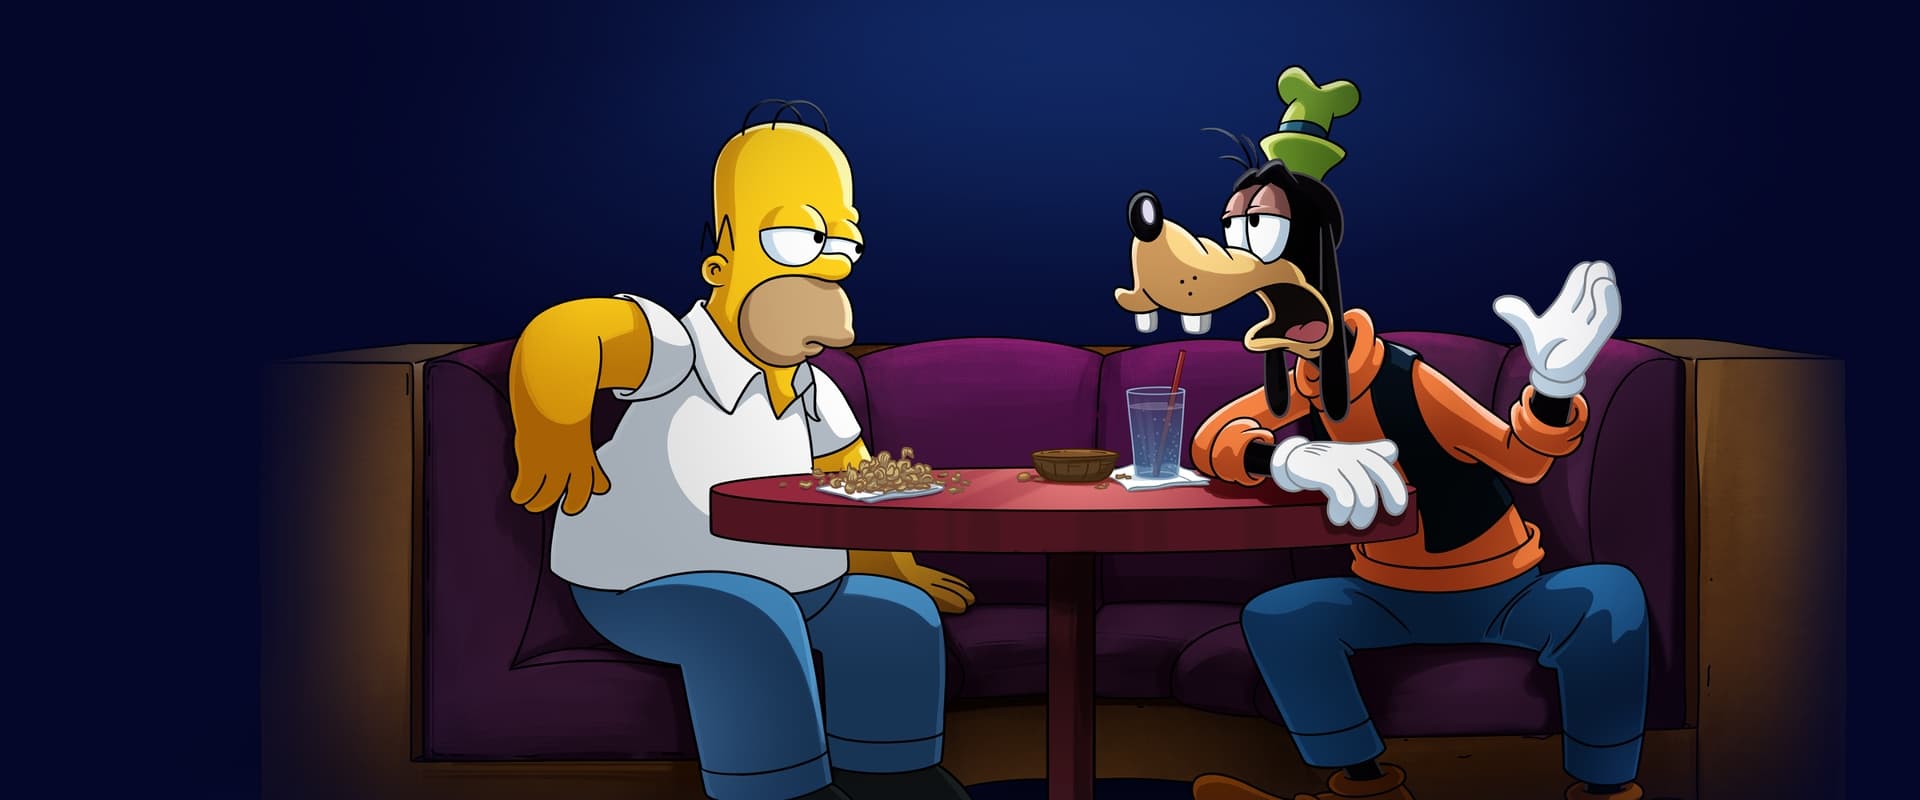 Os Simpsons em Plusniversário